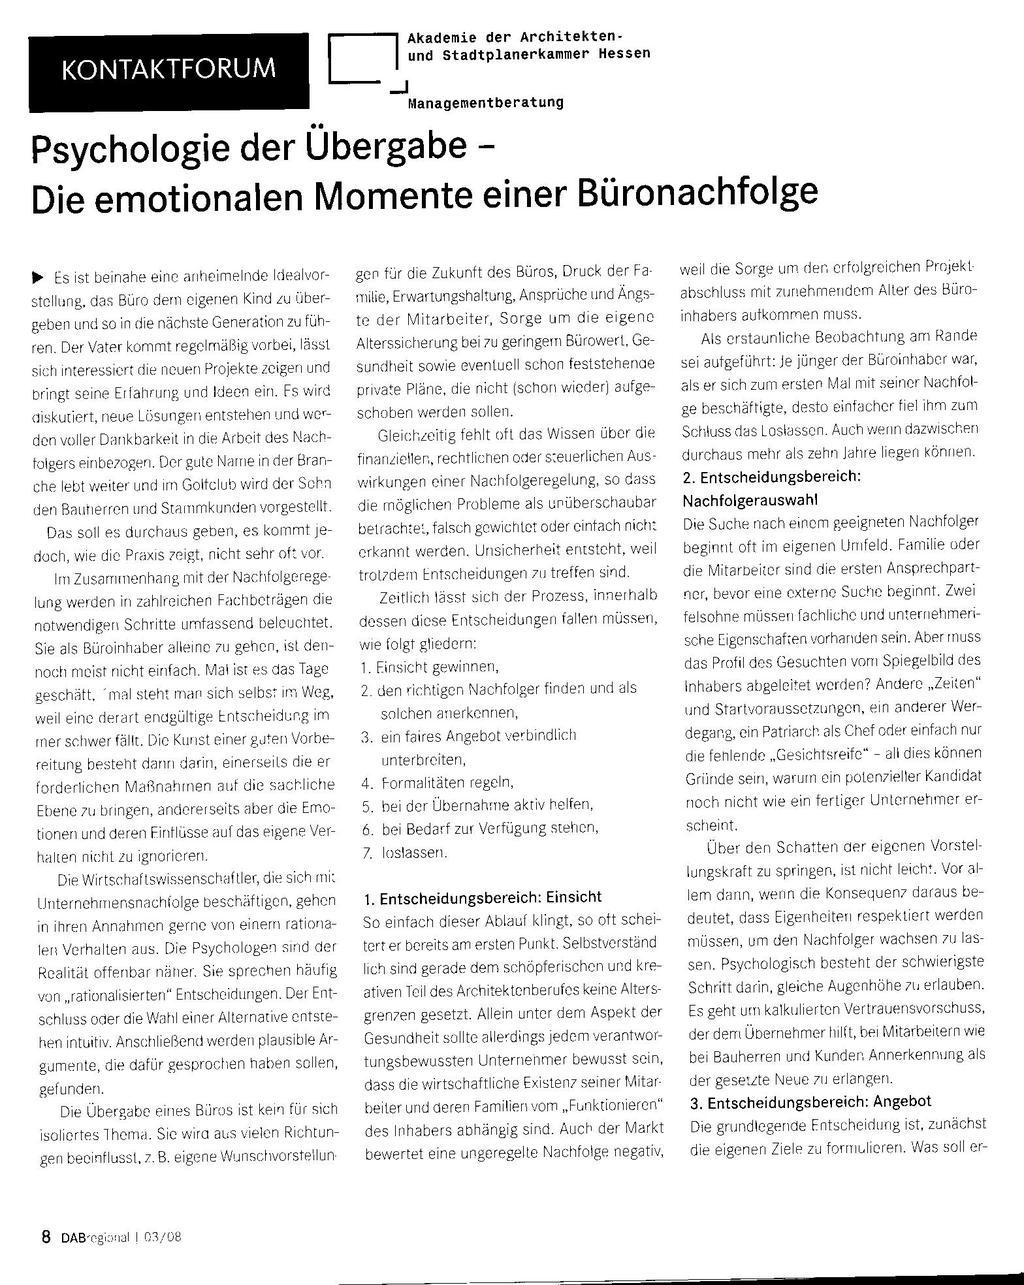 Psychologie der Übergabe Die emotionalen Momente einer Büronachfolge (DAB 3/2008)